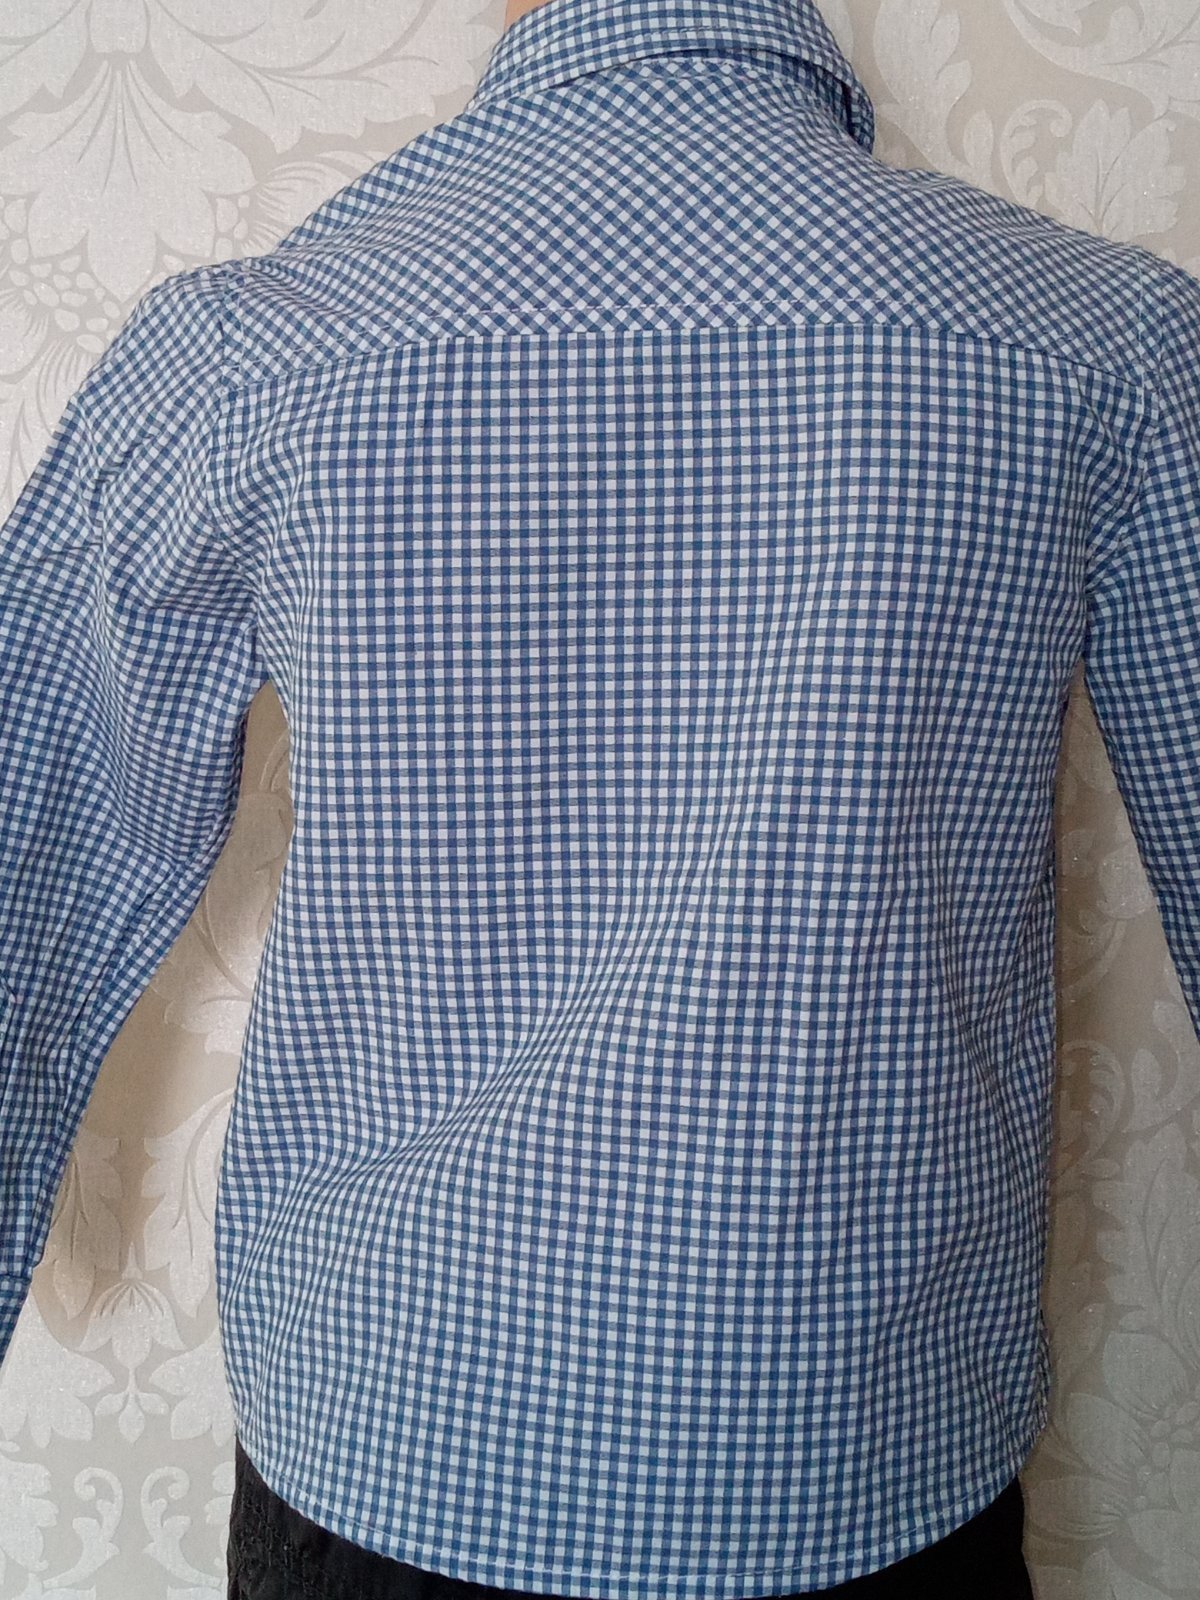 Modro-biela kockovaná košeľa (110)